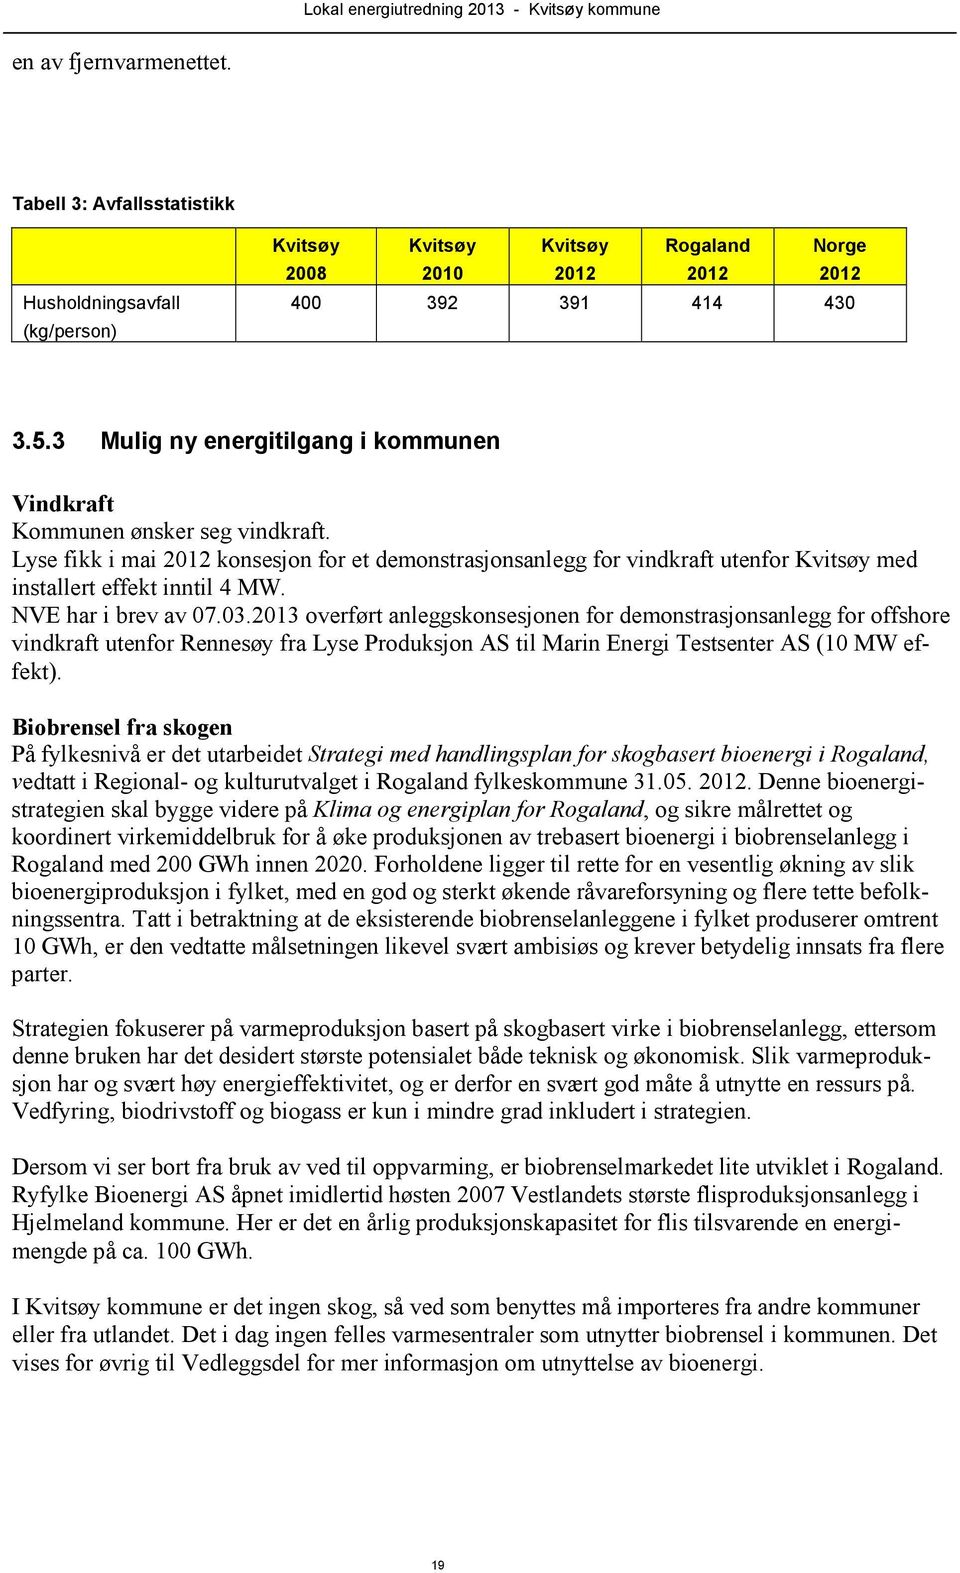 NVE har i brev av 07.03.2013 overført anleggskonsesjonen for demonstrasjonsanlegg for offshore vindkraft utenfor Rennesøy fra Lyse Produksjon AS til Marin Energi Testsenter AS (10 MW effekt).